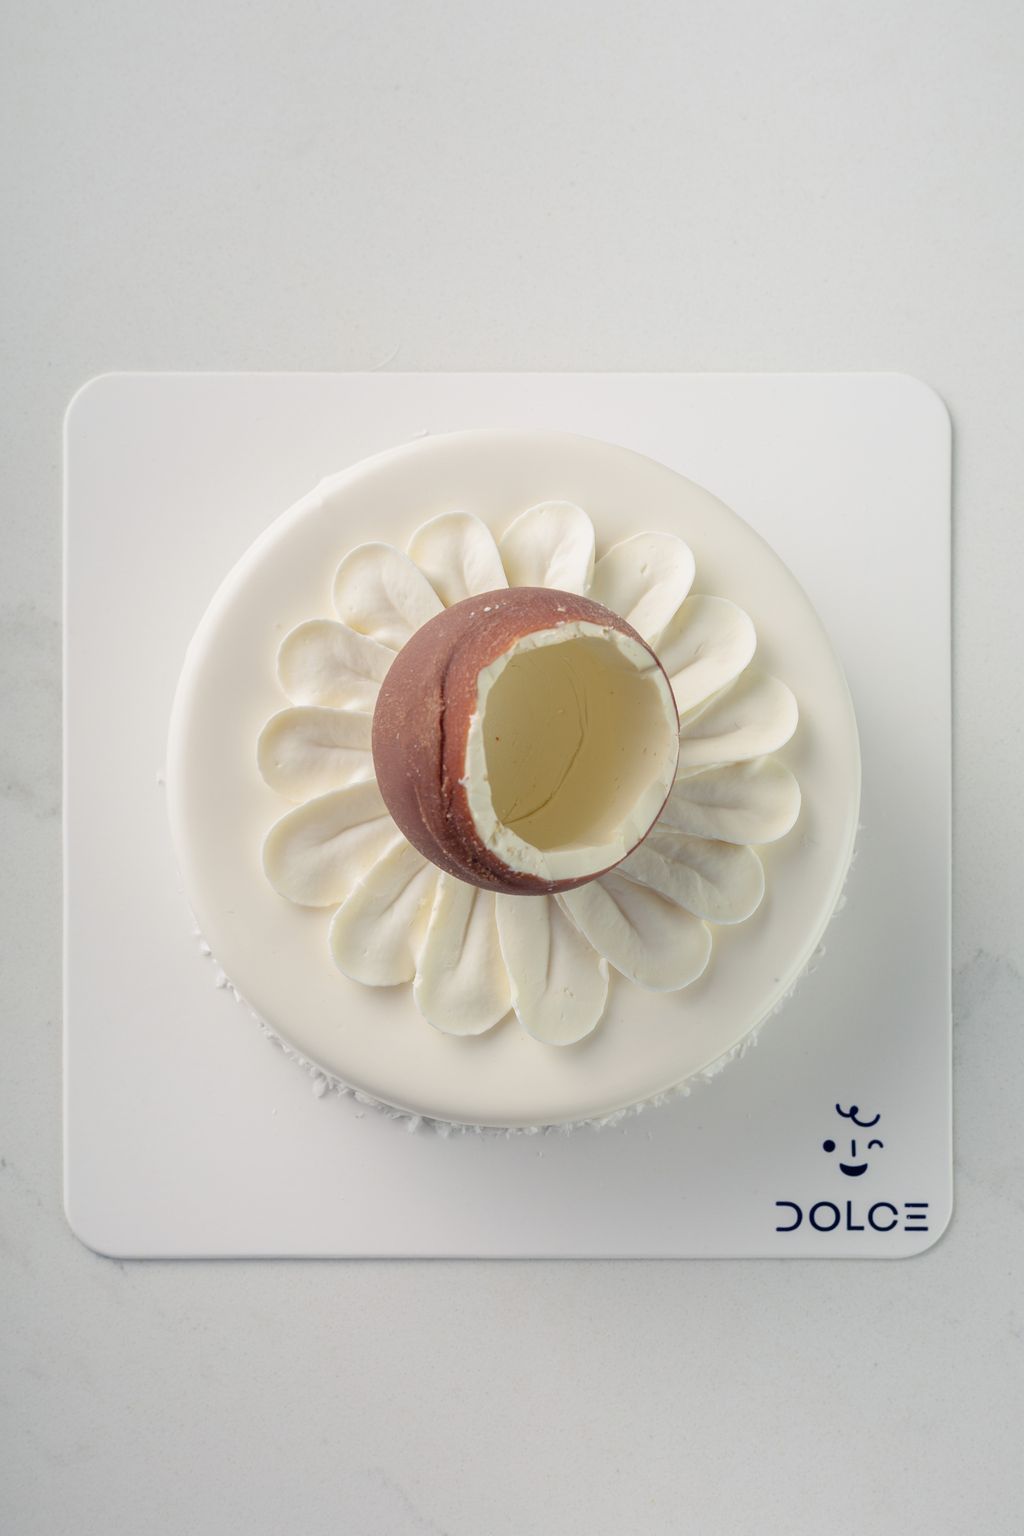 Dolce_Whole Cake-49